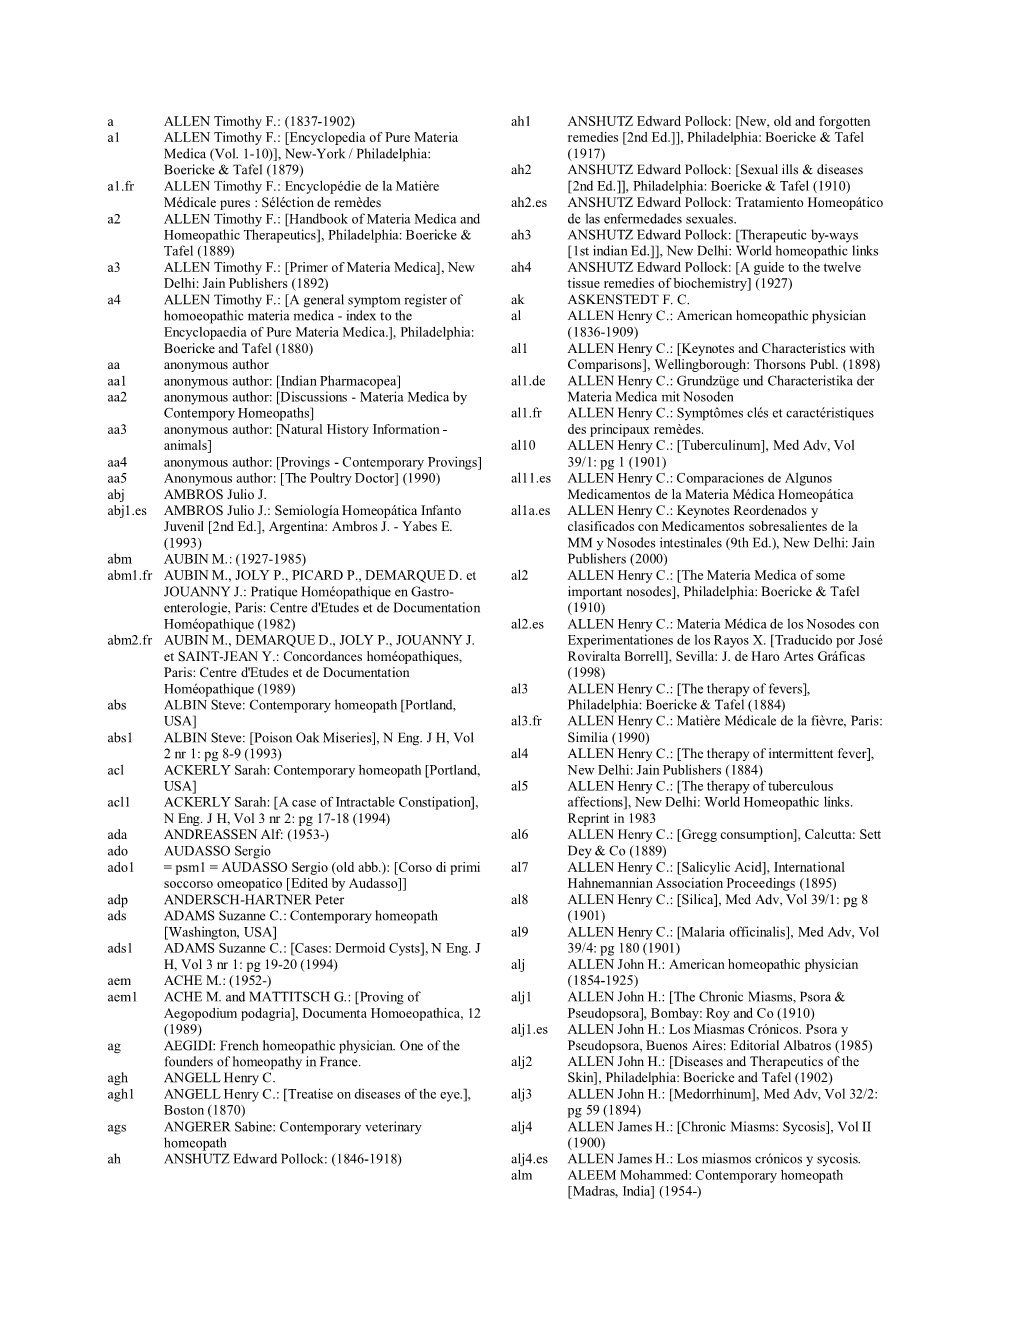 Encyclopedia of Pure Materia Medica (Vol. 1-10)